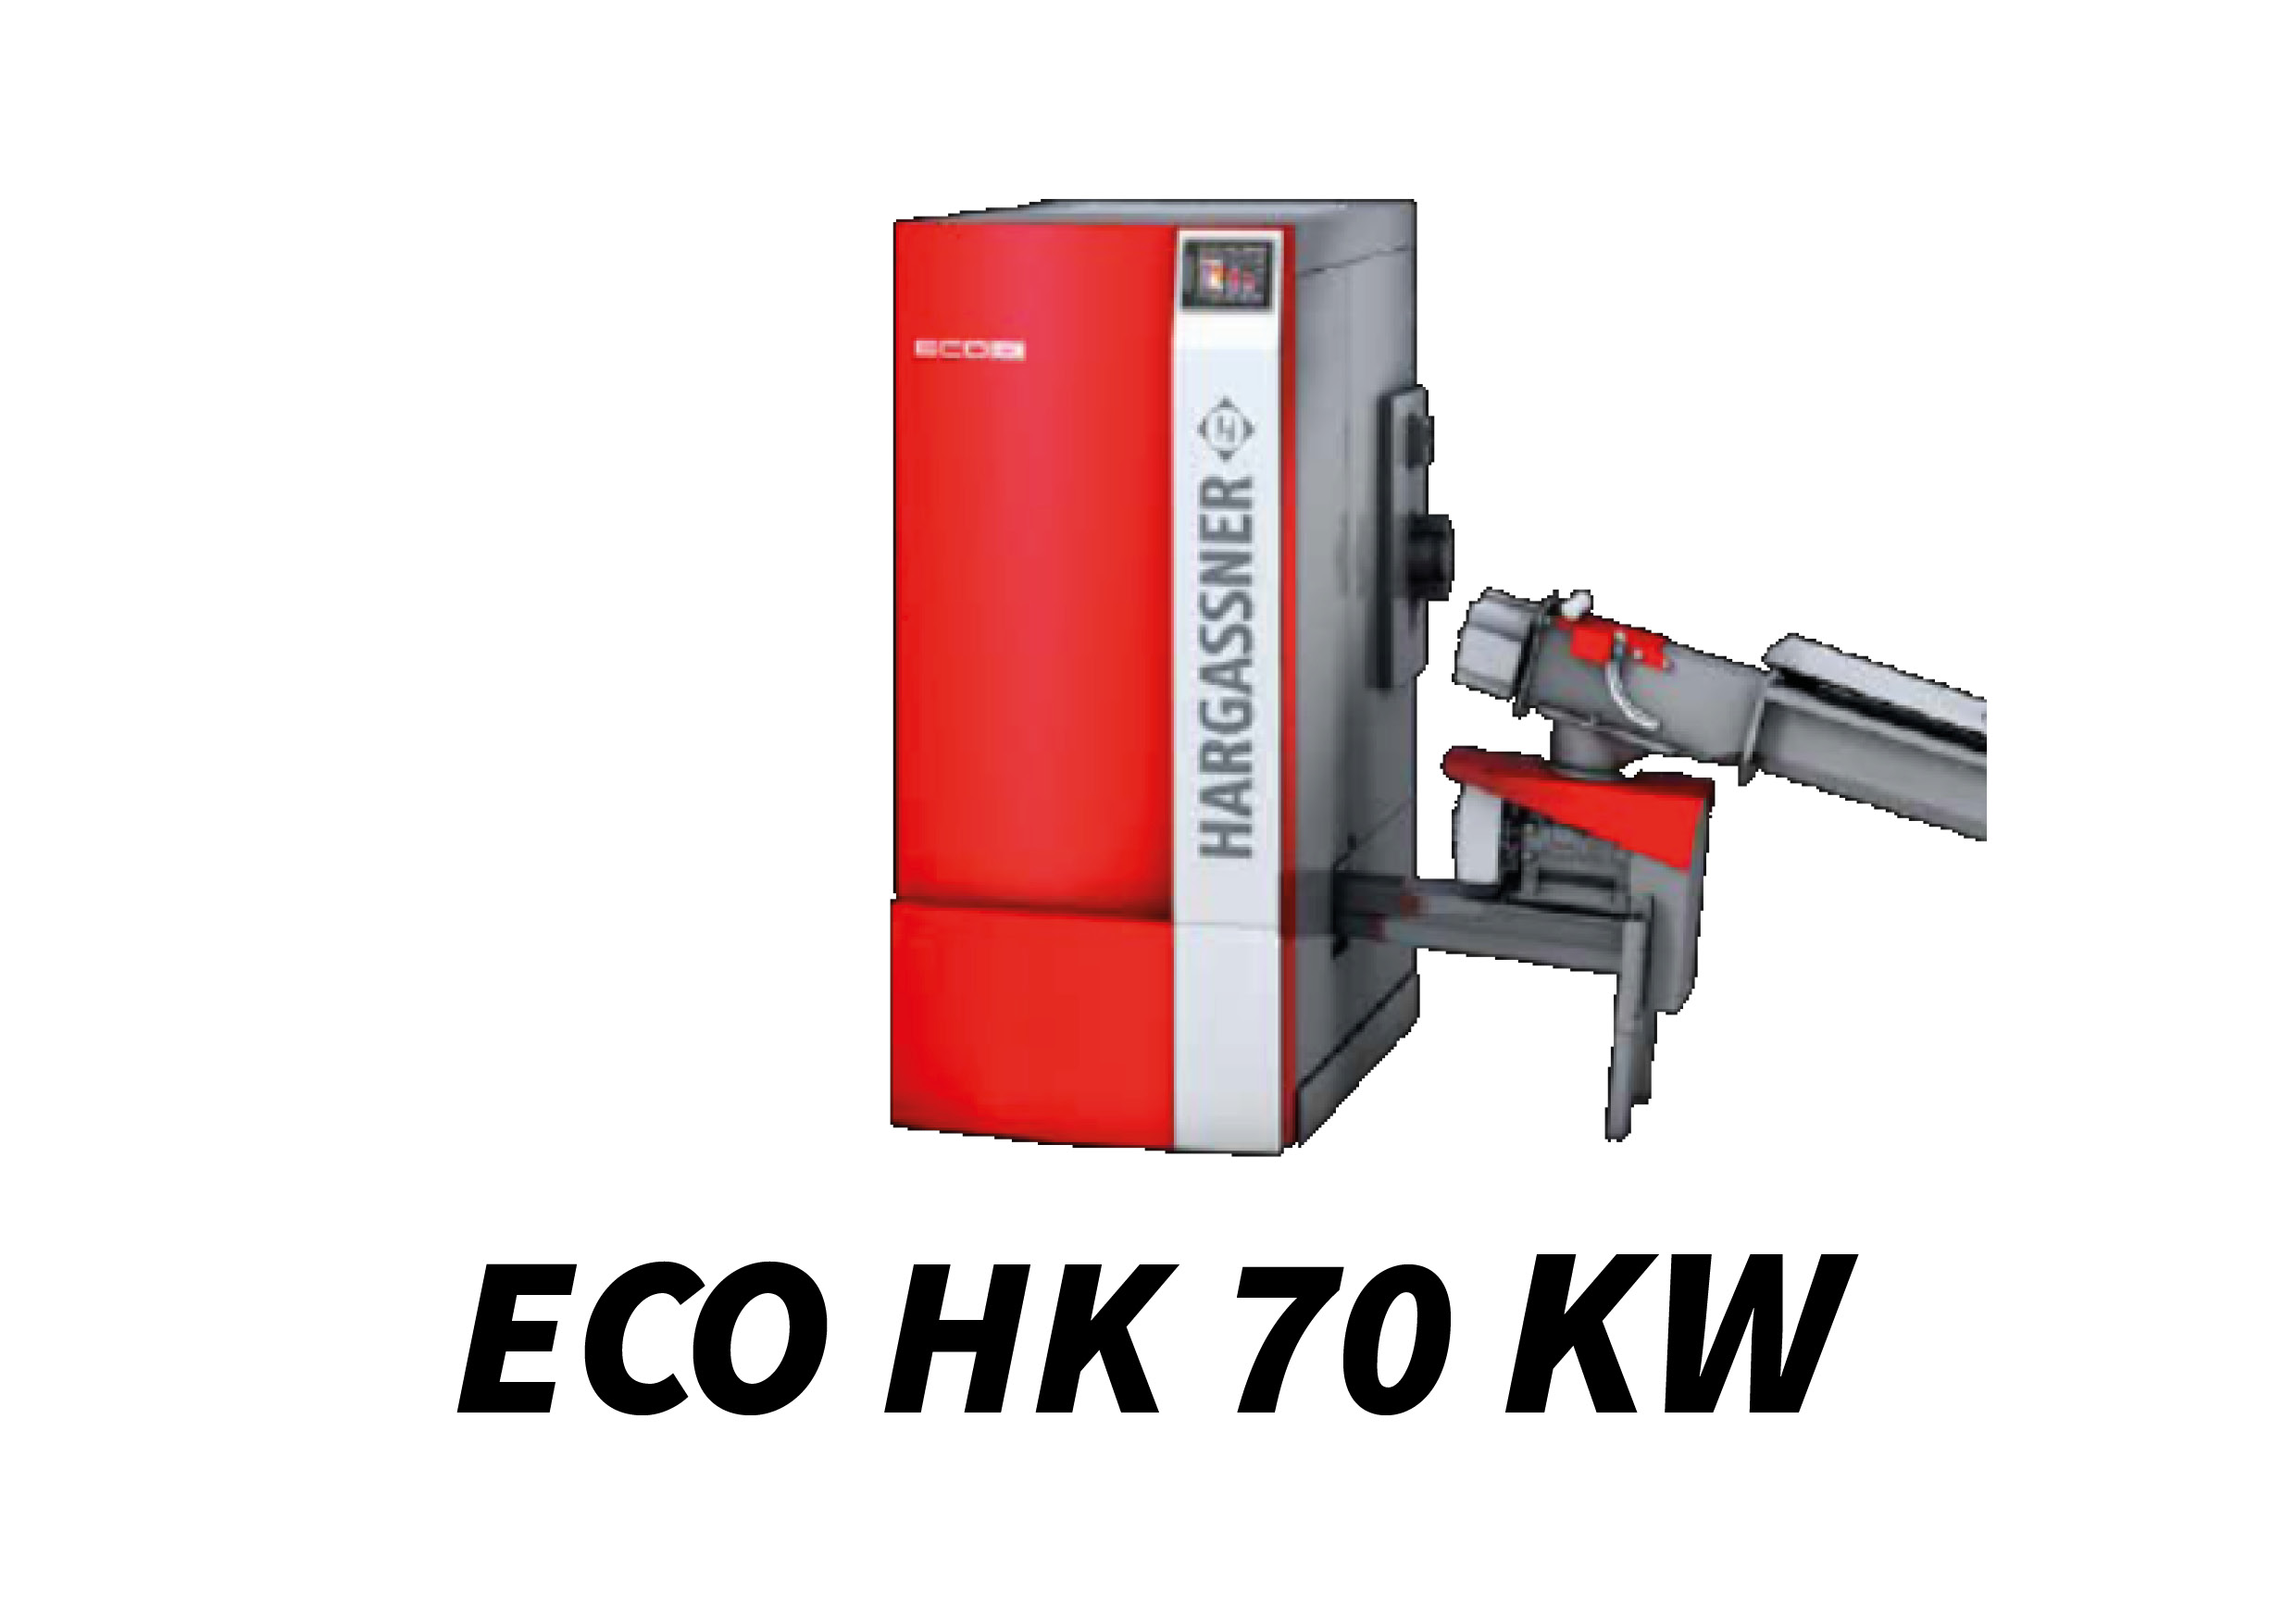 ECO HK 70 kW